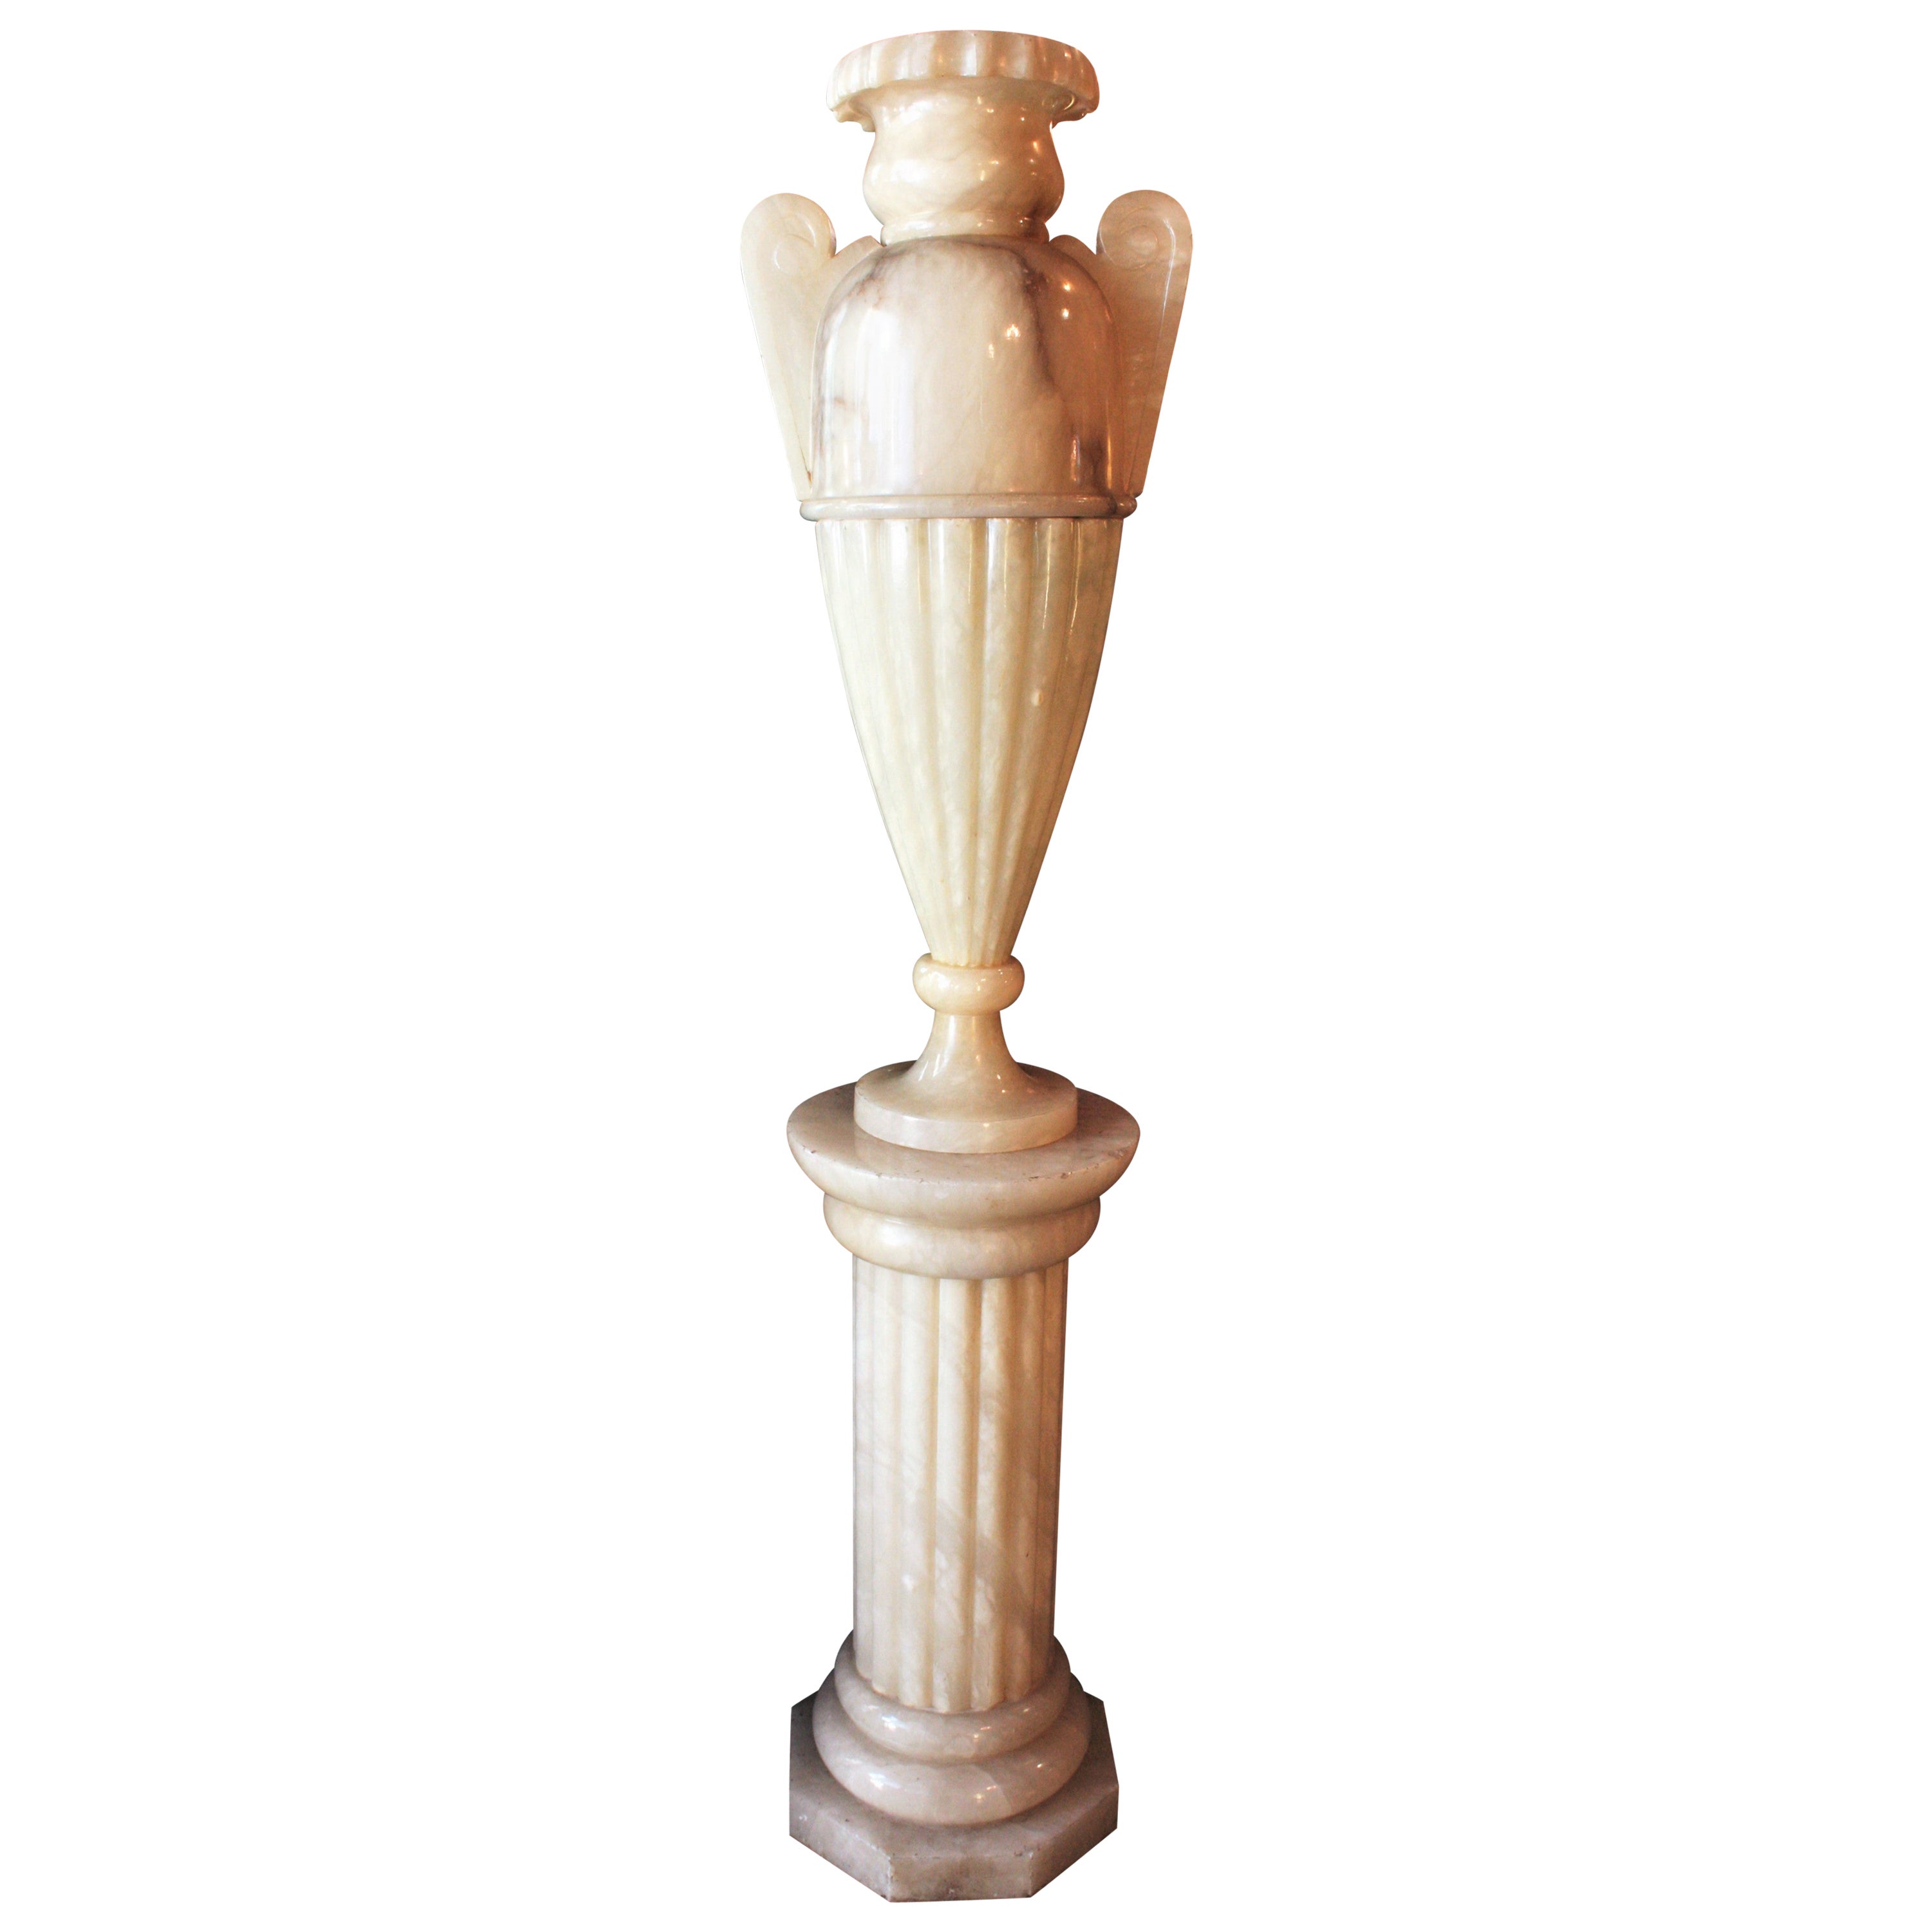 Huge Neoclassical Alabaster Urn Lamp & Column Pedestal Stand For Sale